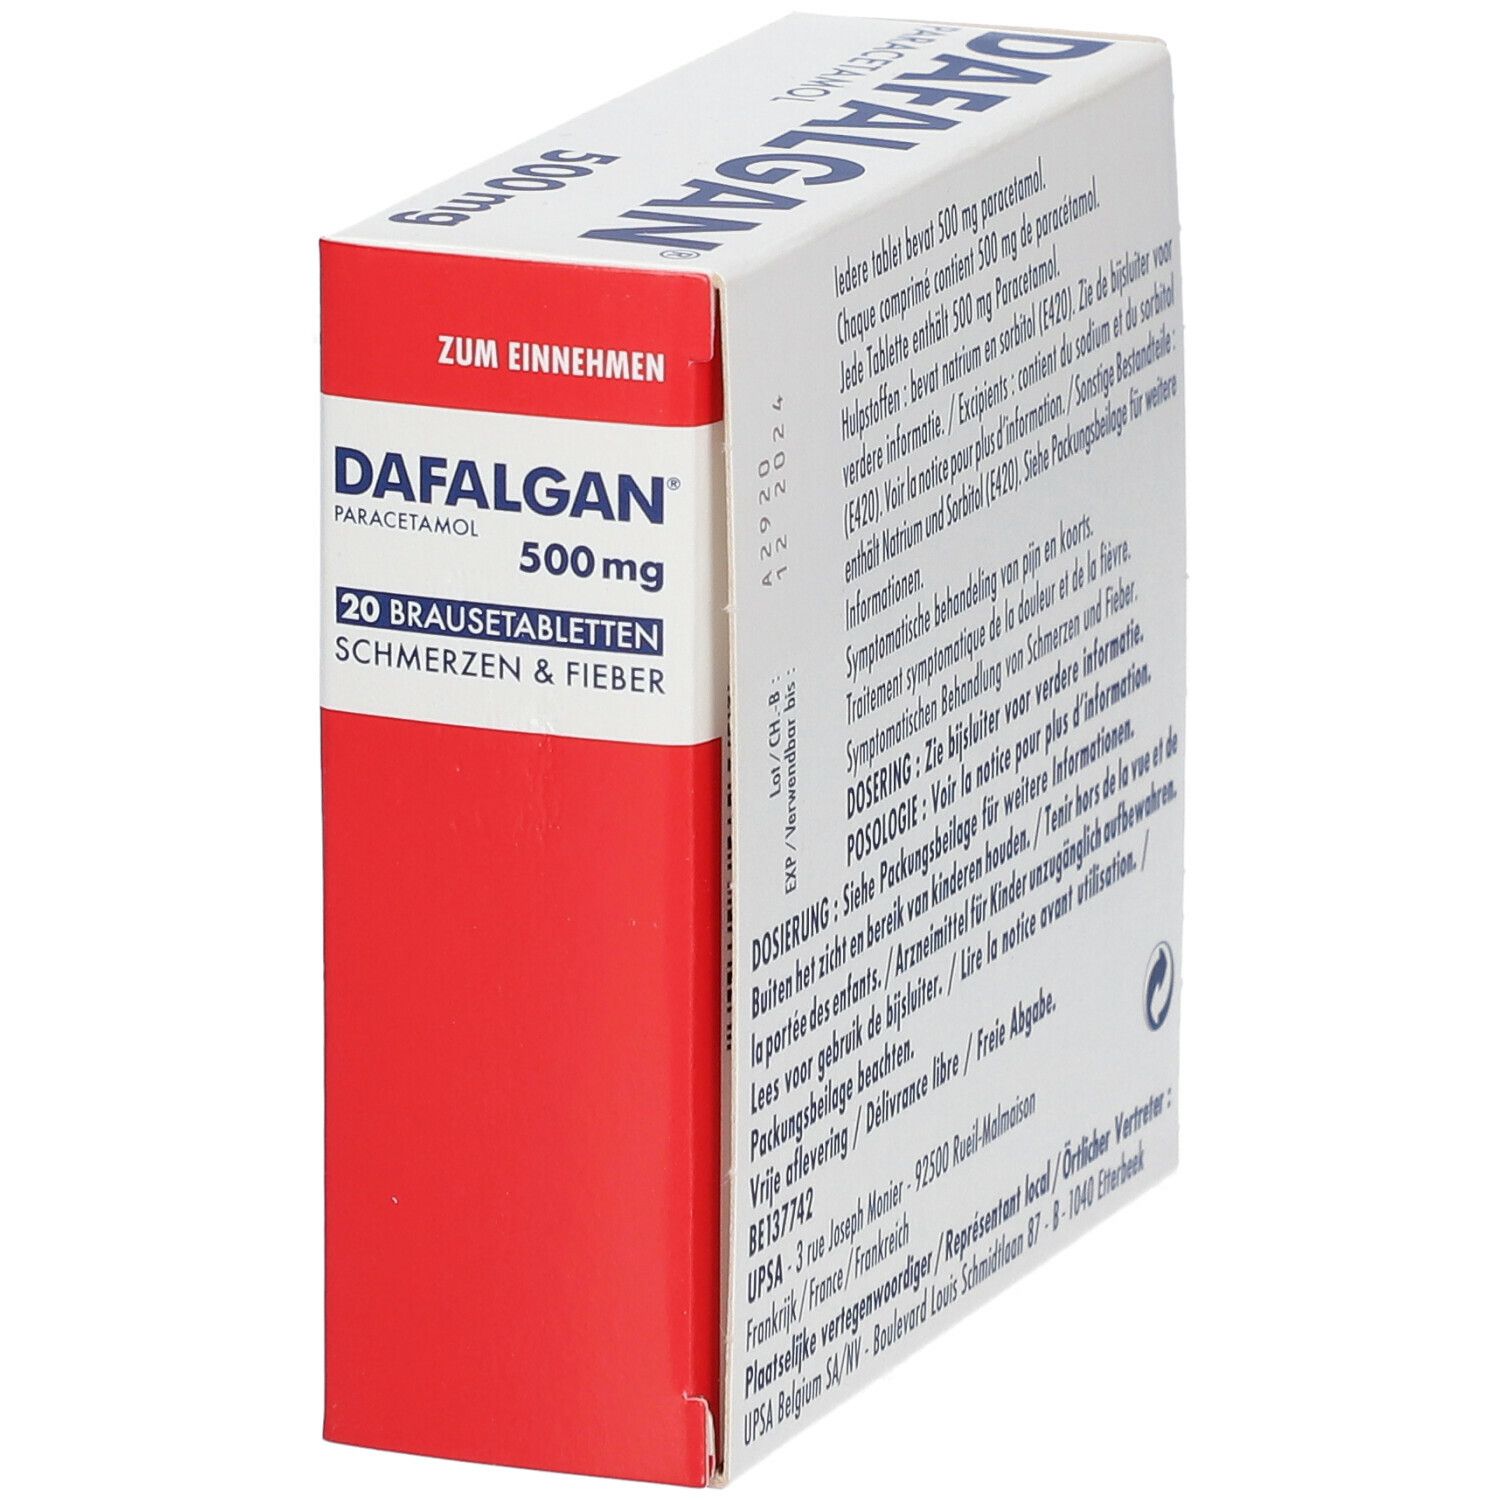 Dafalgan 500 mg Comprimés Effervescents